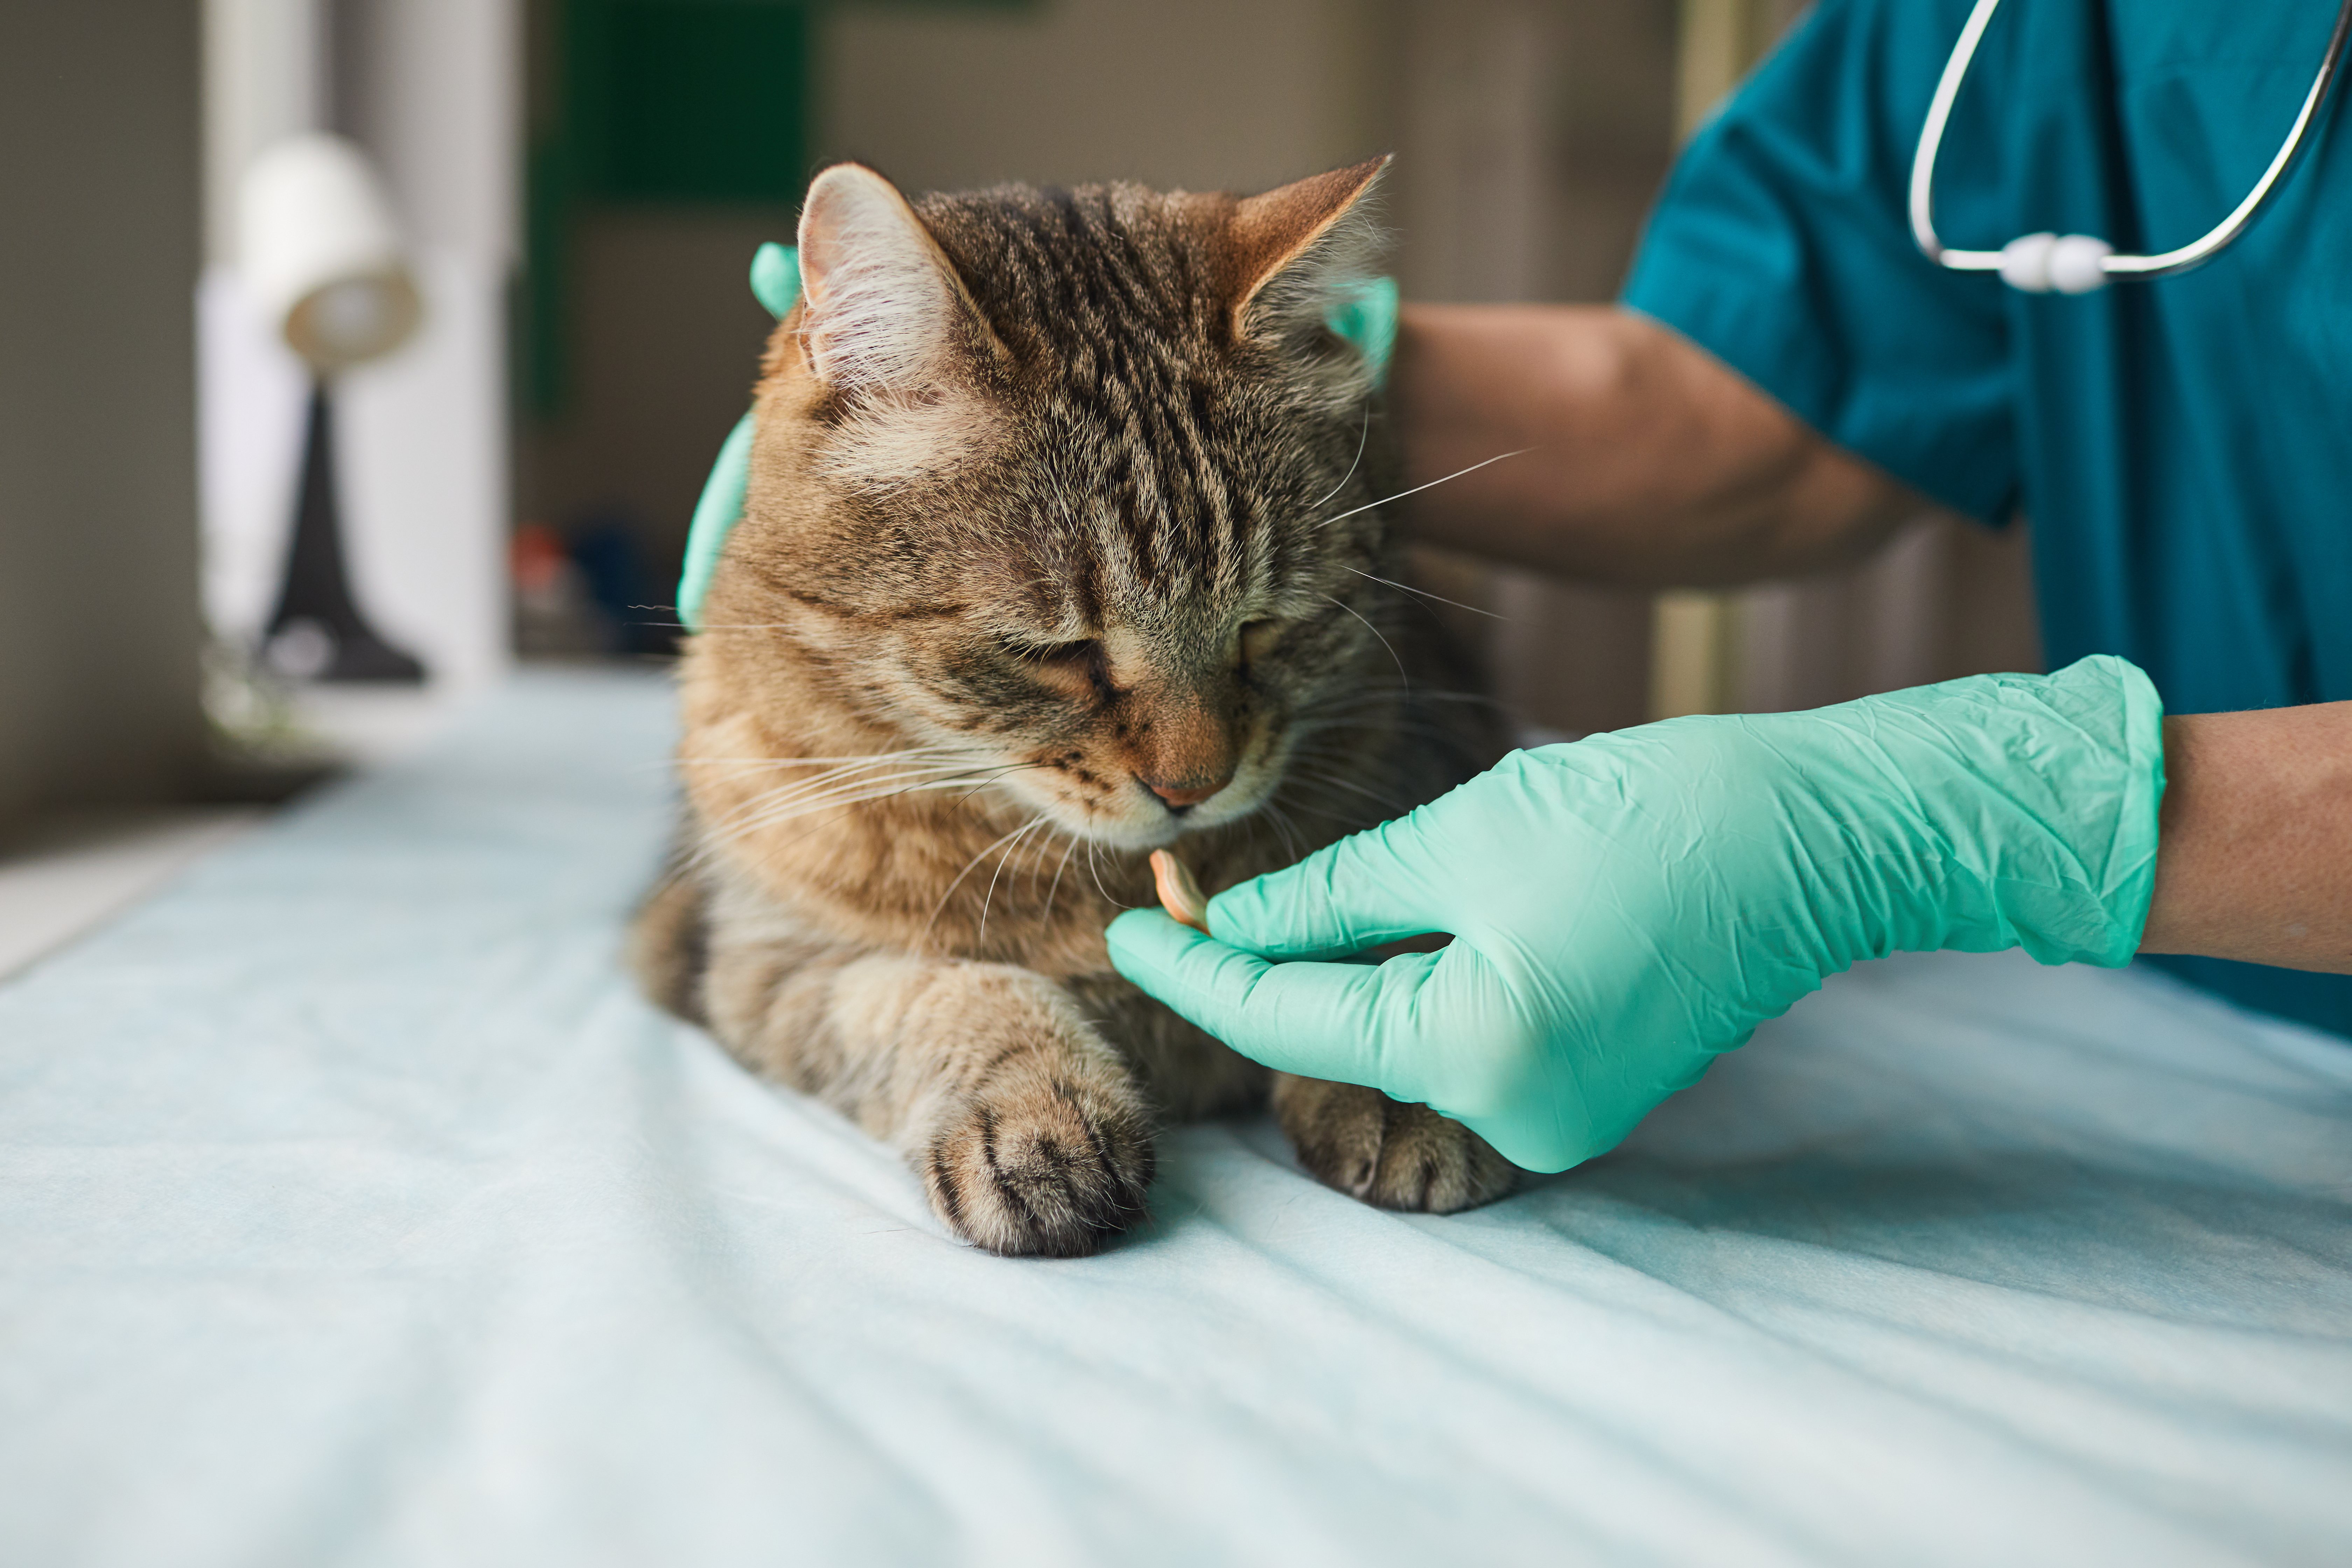 Hay muchos síntomas que nos pueden indicar que nuestro gato se ha intoxicado como por ejemplo la pérdida de apetito o diarreas